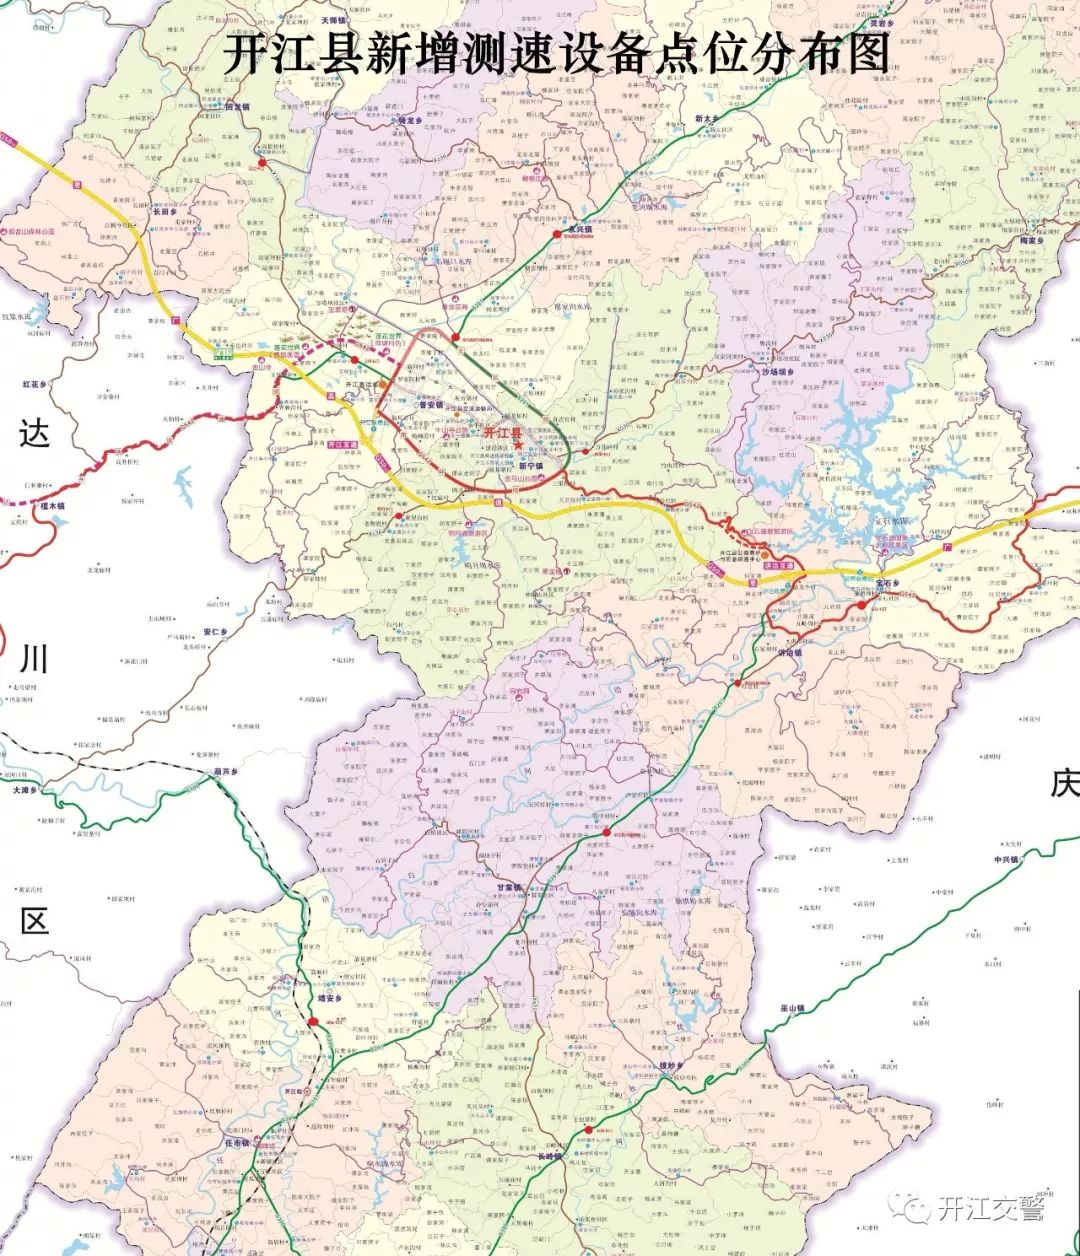 附:开江县新增测速设备点位分布图2019年6月14日开江县公安局交通警察